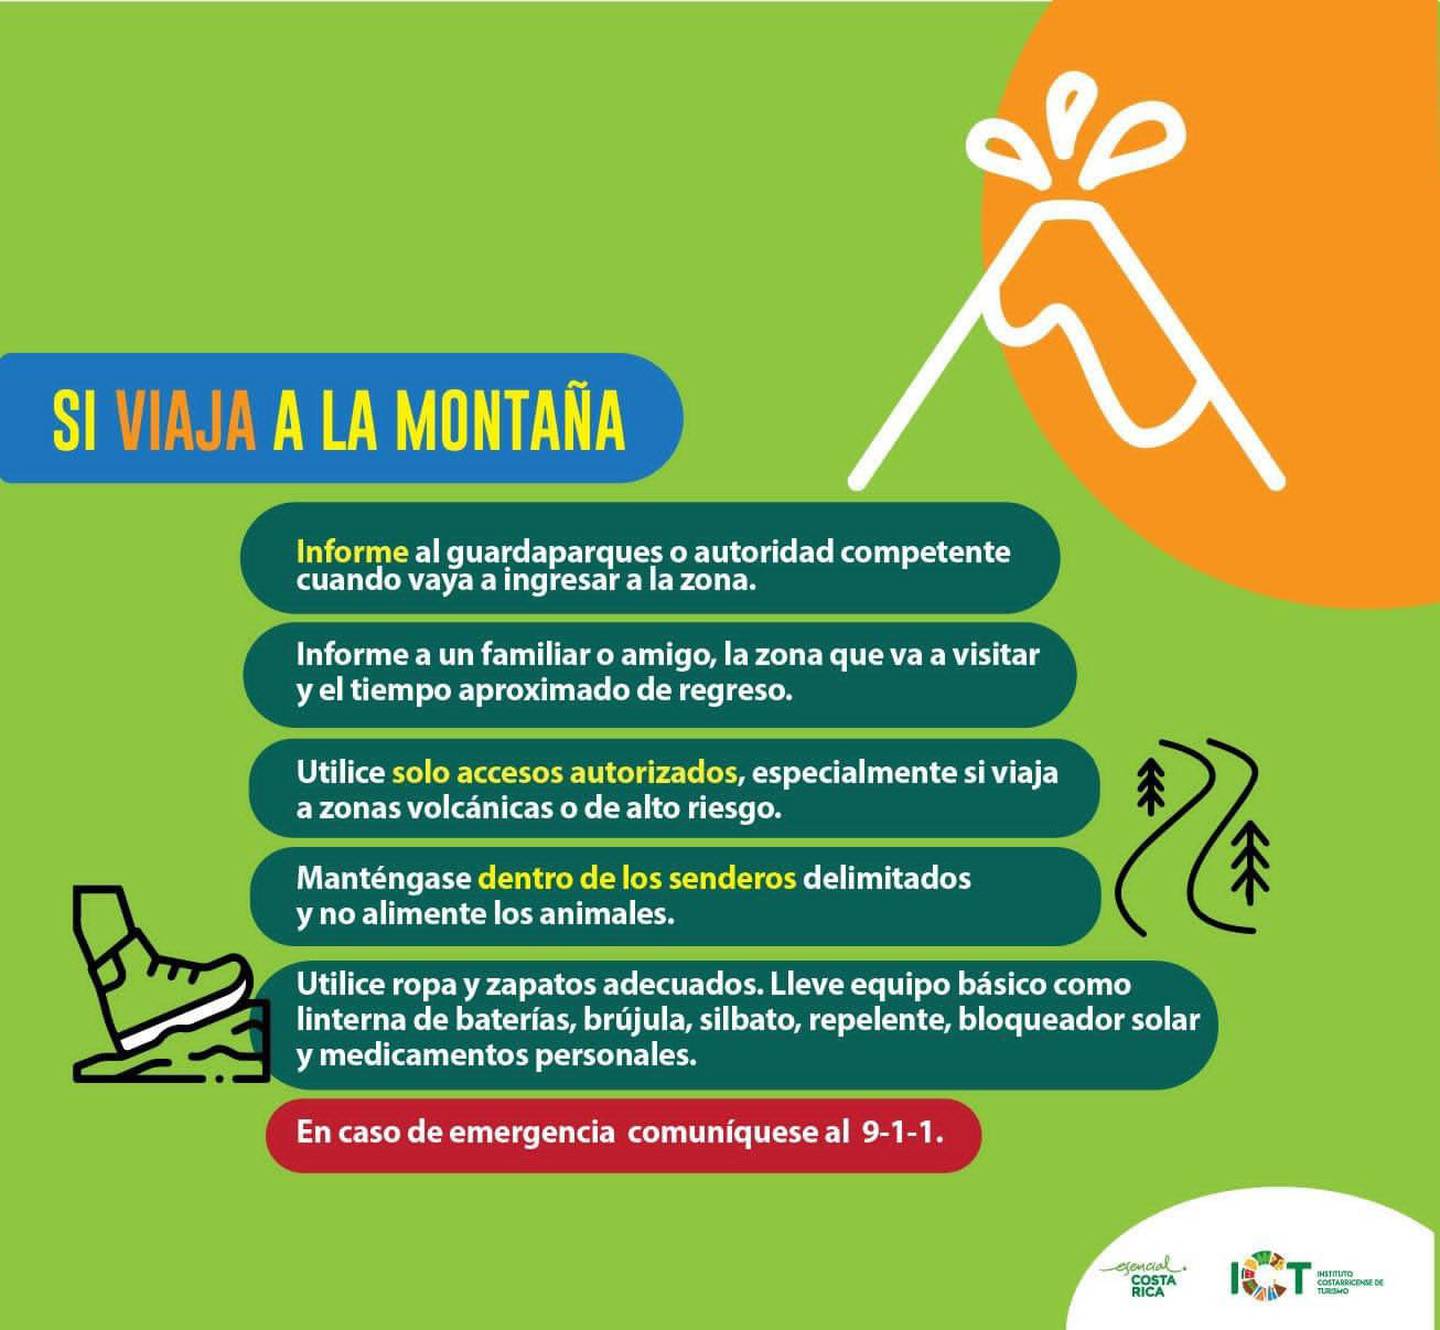 Con el inicio de la Semana Santa, el Instituto Costarricense de Turismo (ICT) preparó una serie de infografías con consejos y recomendaciones para ser turistas responsables y seguros durante los días de descanso y reflexión